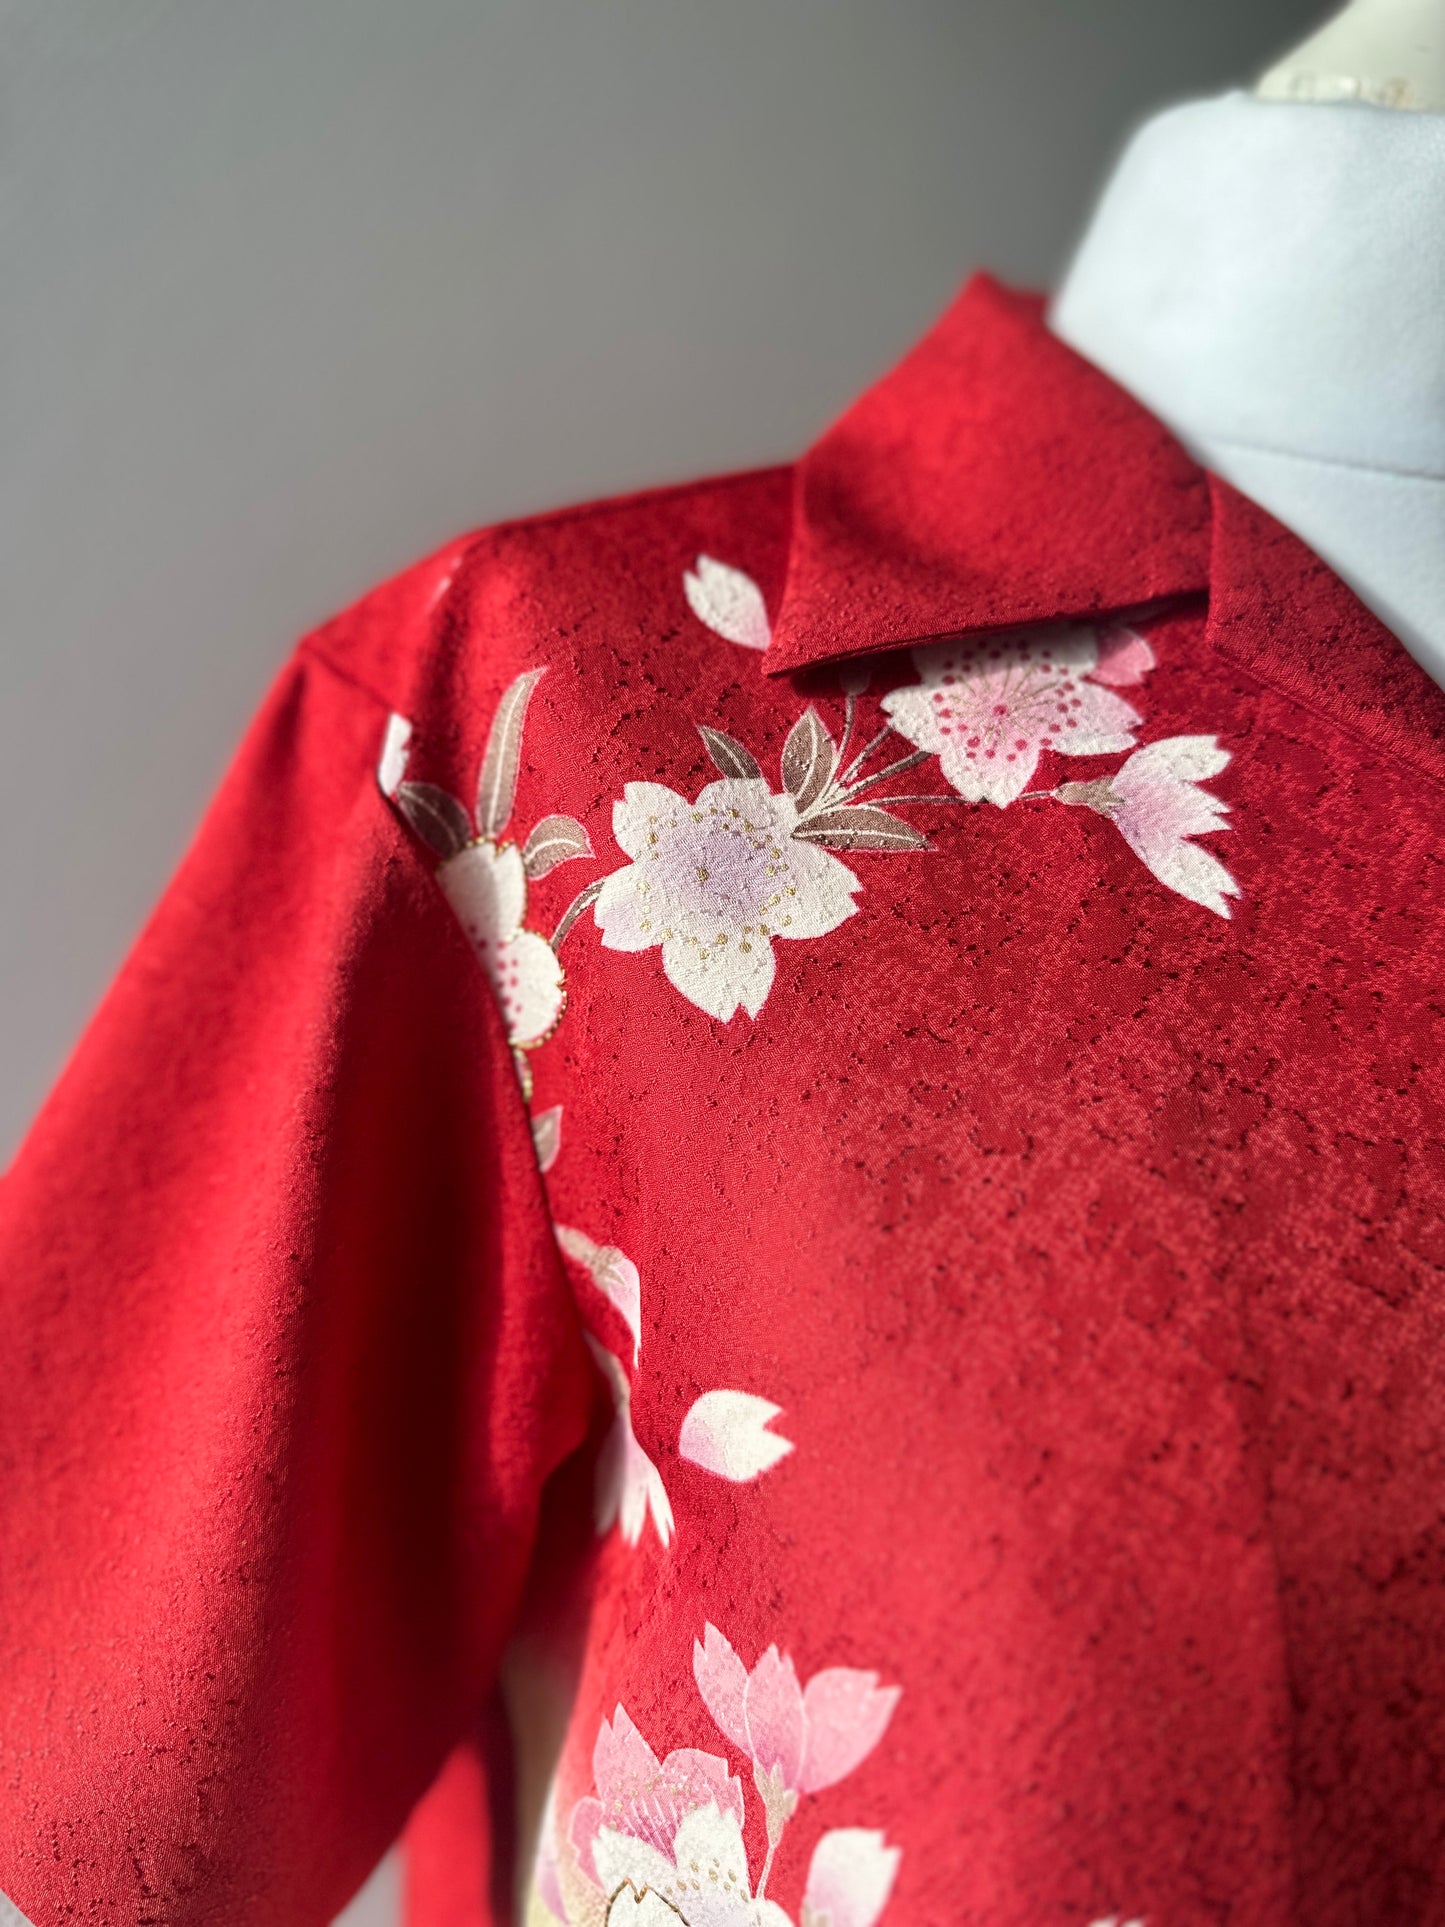 【Rouge foncé, ceriserie】 chemise / taille hawaïenne: S ＜ Nouveau ・ Silk ＞ pour les hommes, pour les femmes, pour les enfants, le kimono japonais, les vêtements unisexais japonais, unisexe, cadeaux japonais, article original